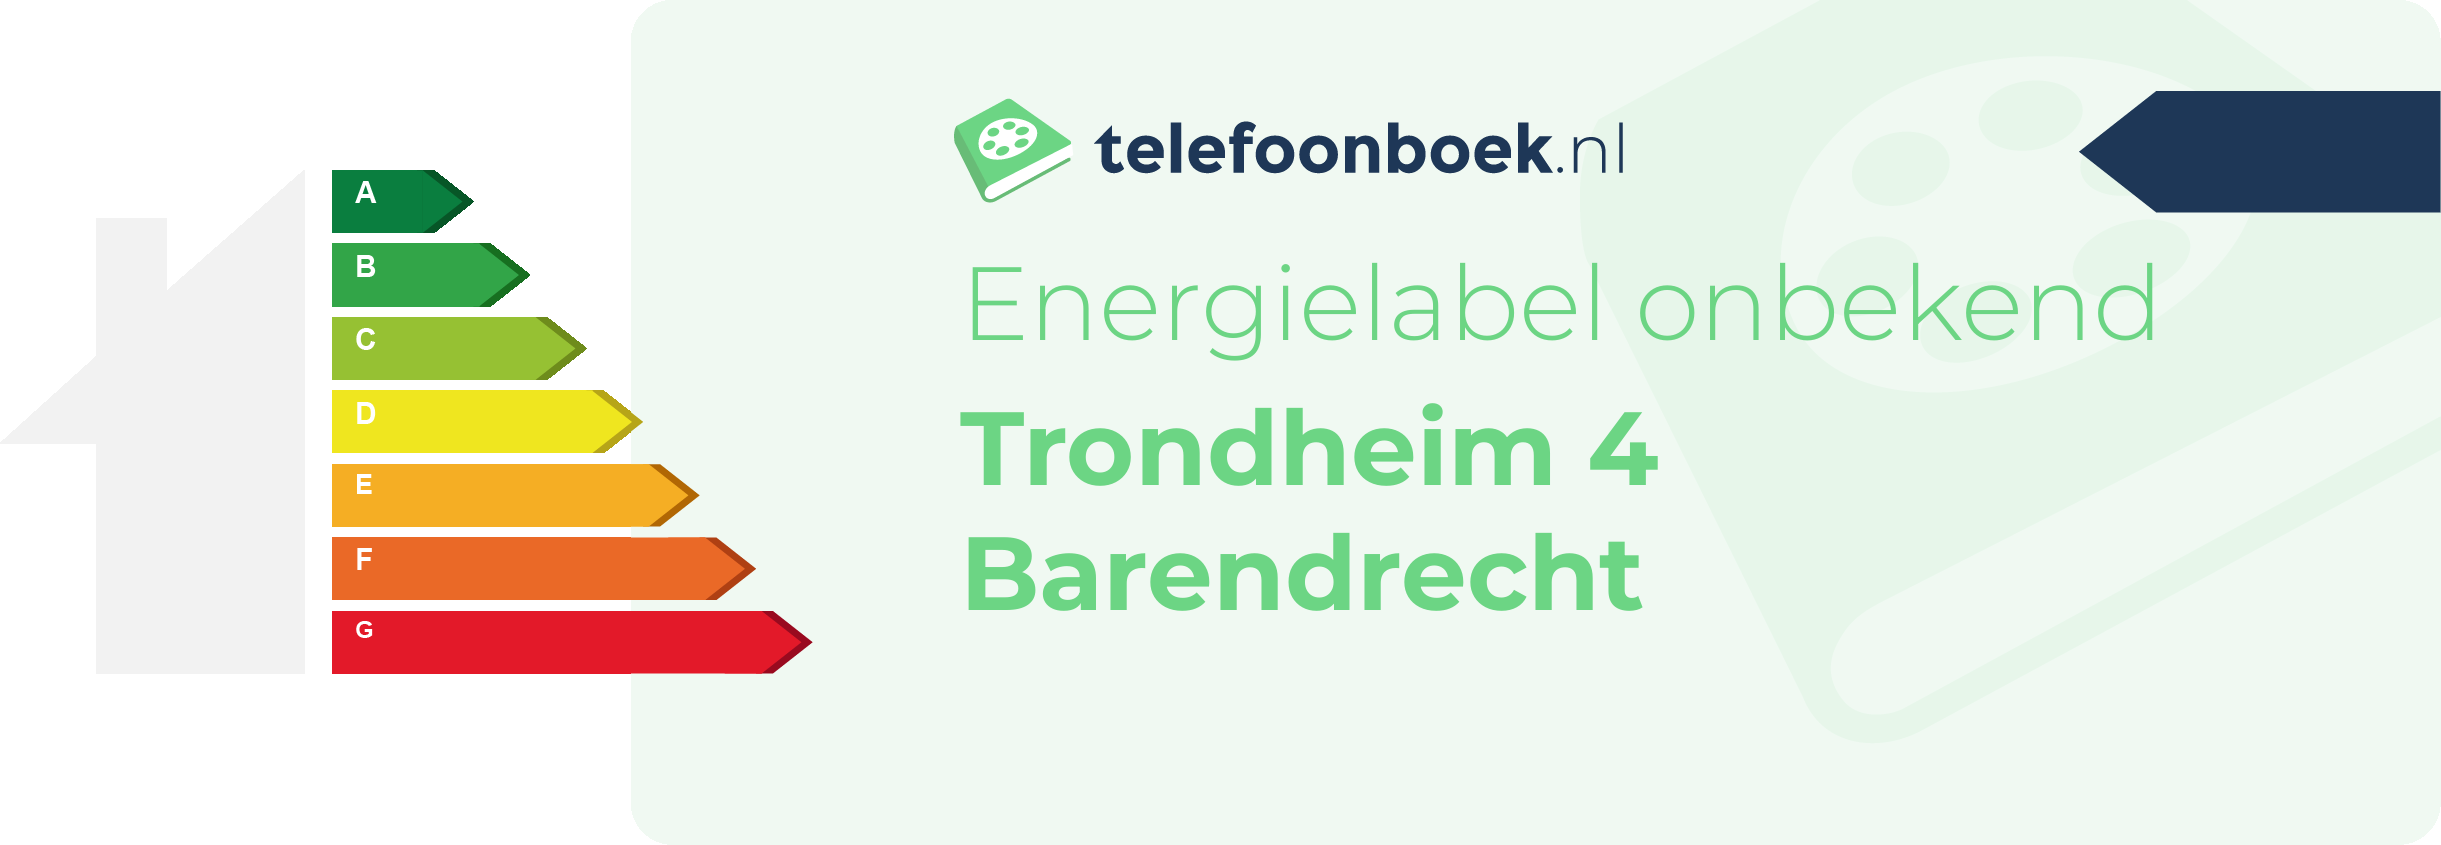 Energielabel Trondheim 4 Barendrecht